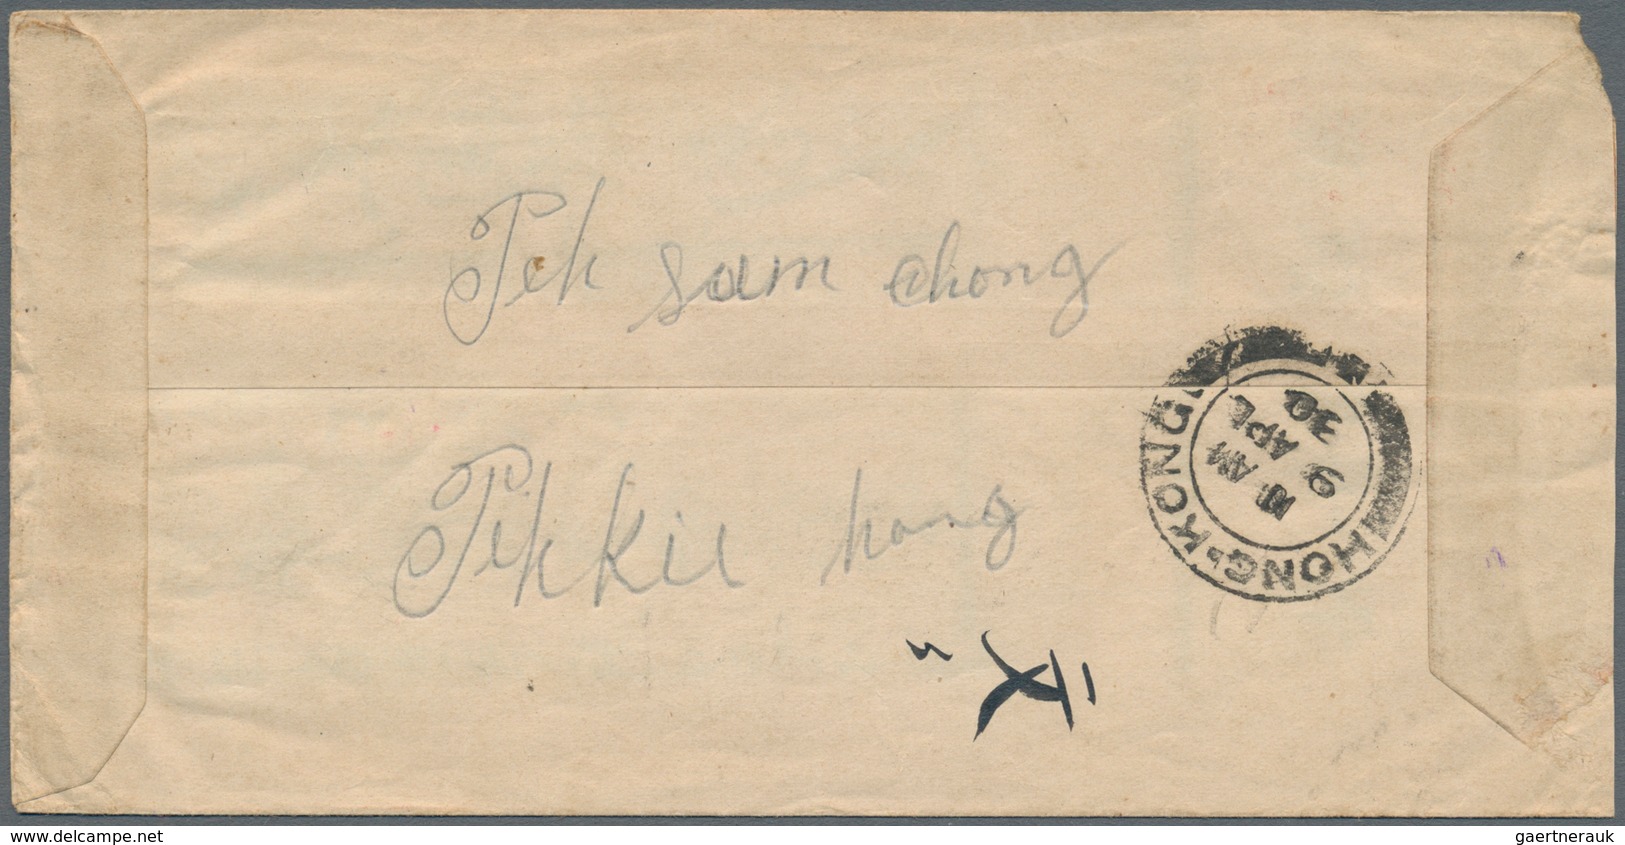 Japanische Verwaltung Von Taiwan: 1930. Red Band Envelope Addressed To Singapore Bearing Japan SG 23 - 1945 Japanisch Besetzung